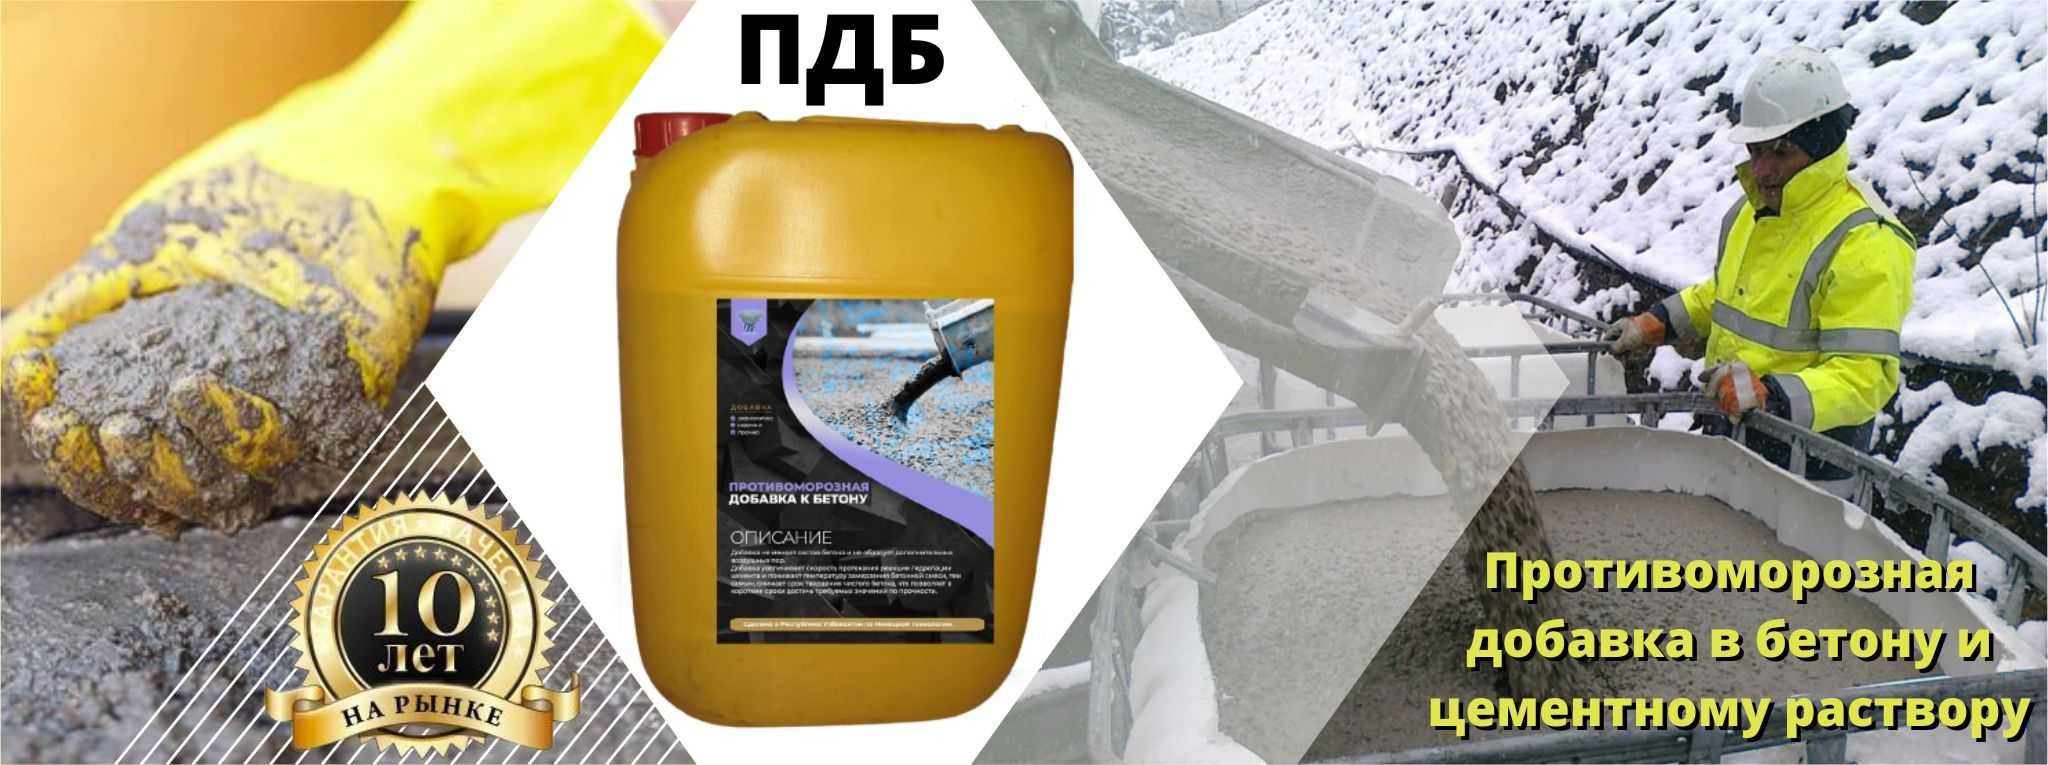 ПДБ Антимороз добавка для бетонных изделий -20° Антимароз